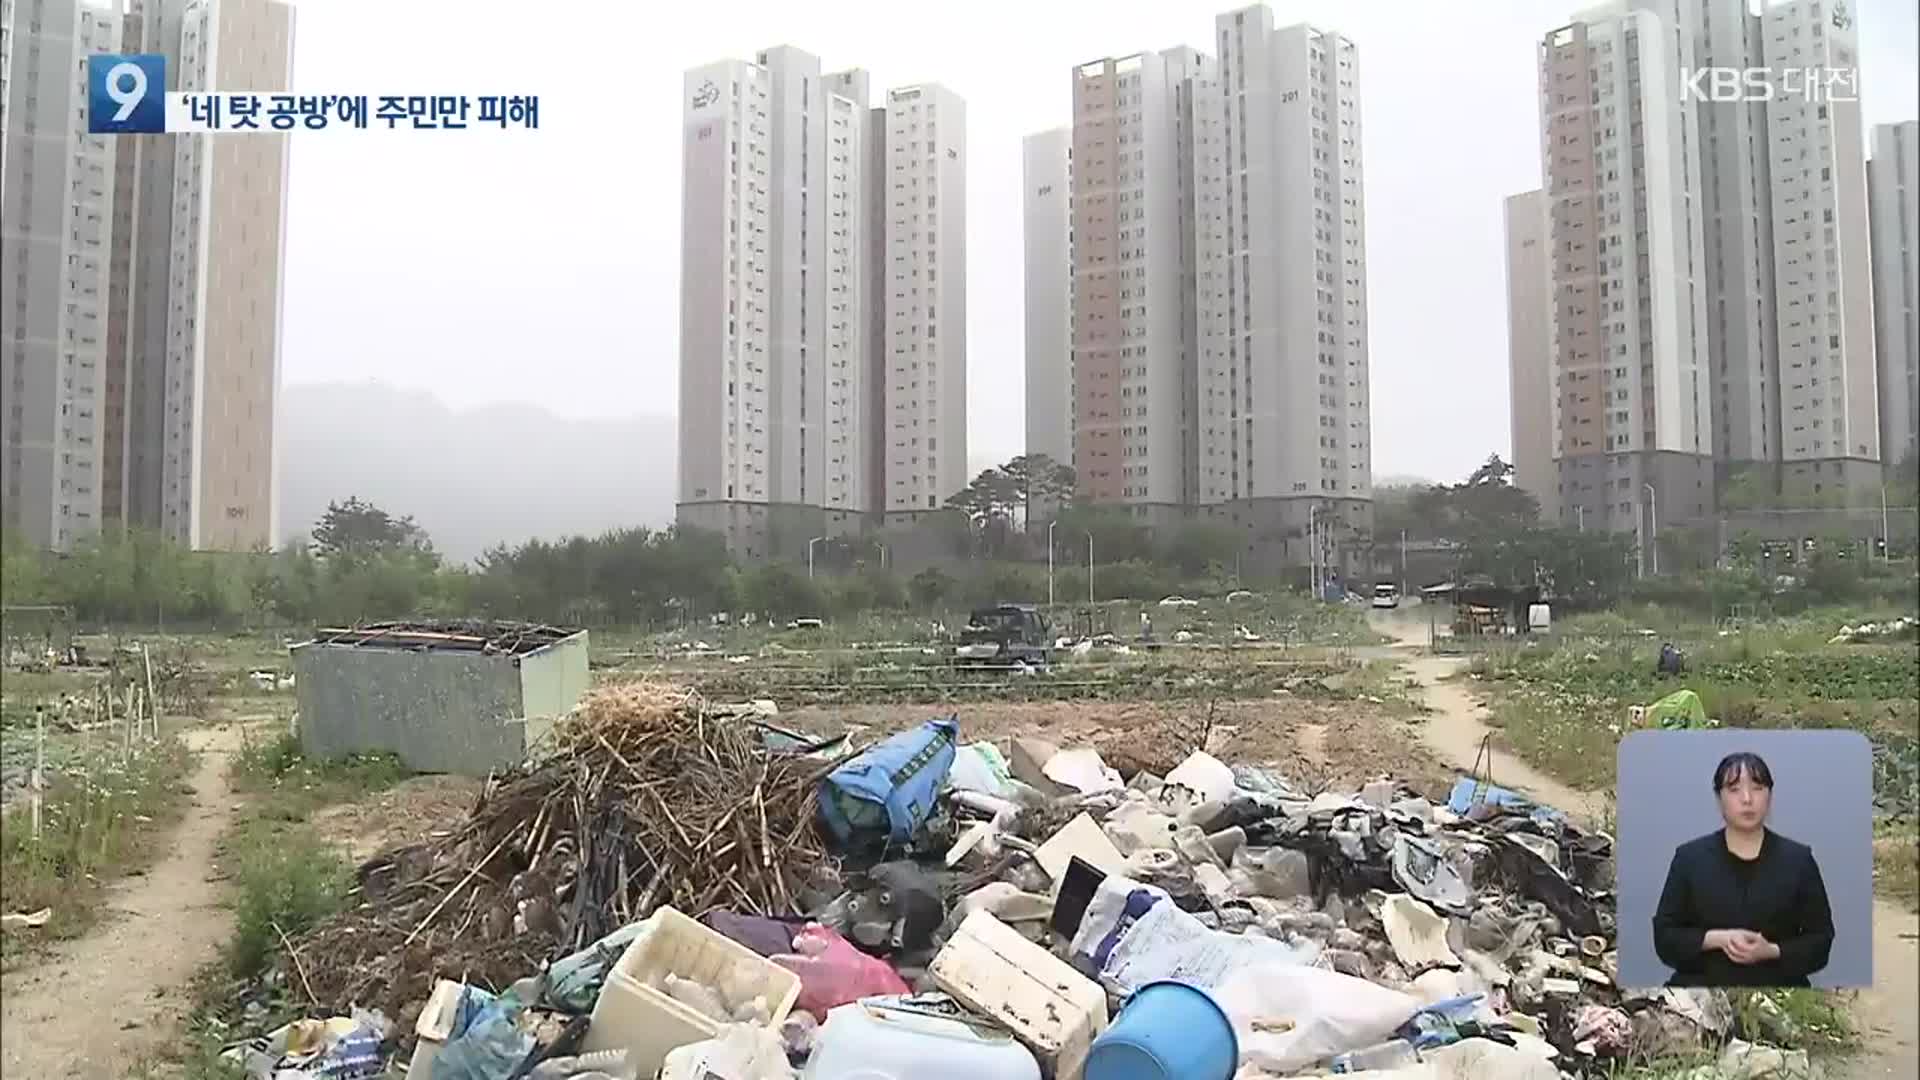 아파트 단지 사이에 쓰레기장이?…땅 주인 바뀌며 주민 피해만